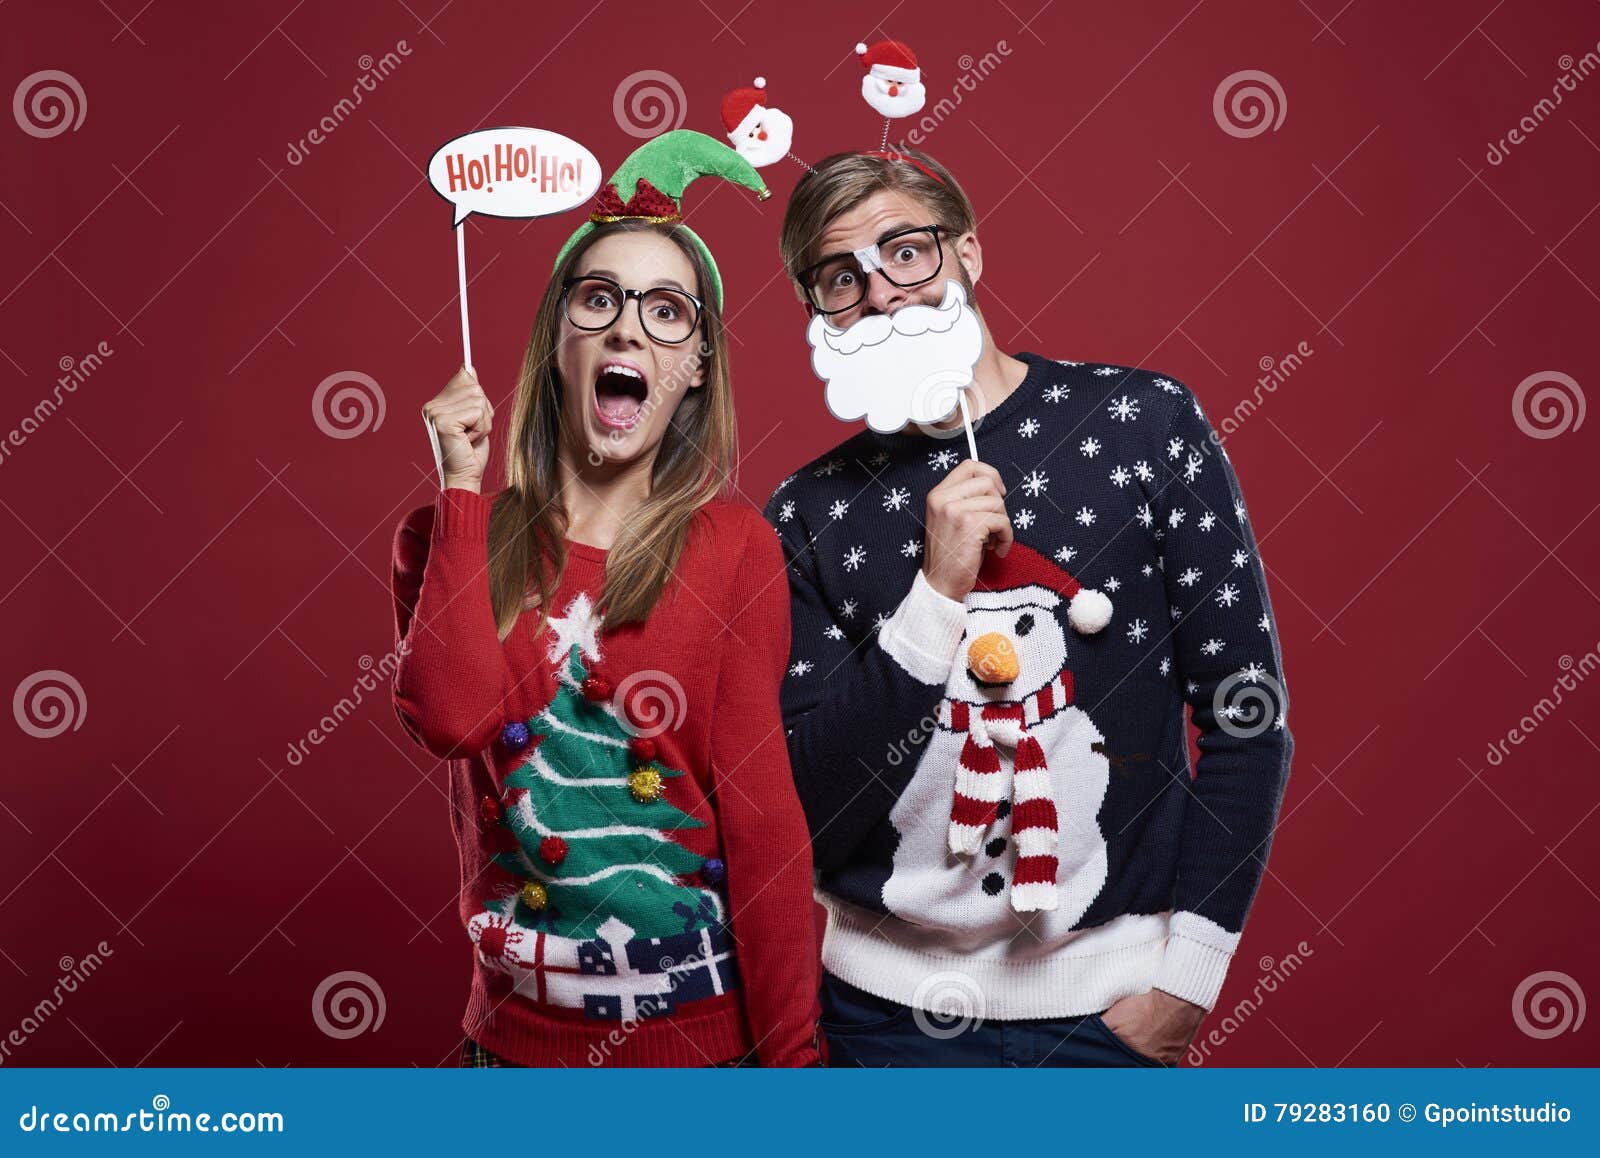 Christmas couple stock photo. Image of fashioned, shot - 79283160